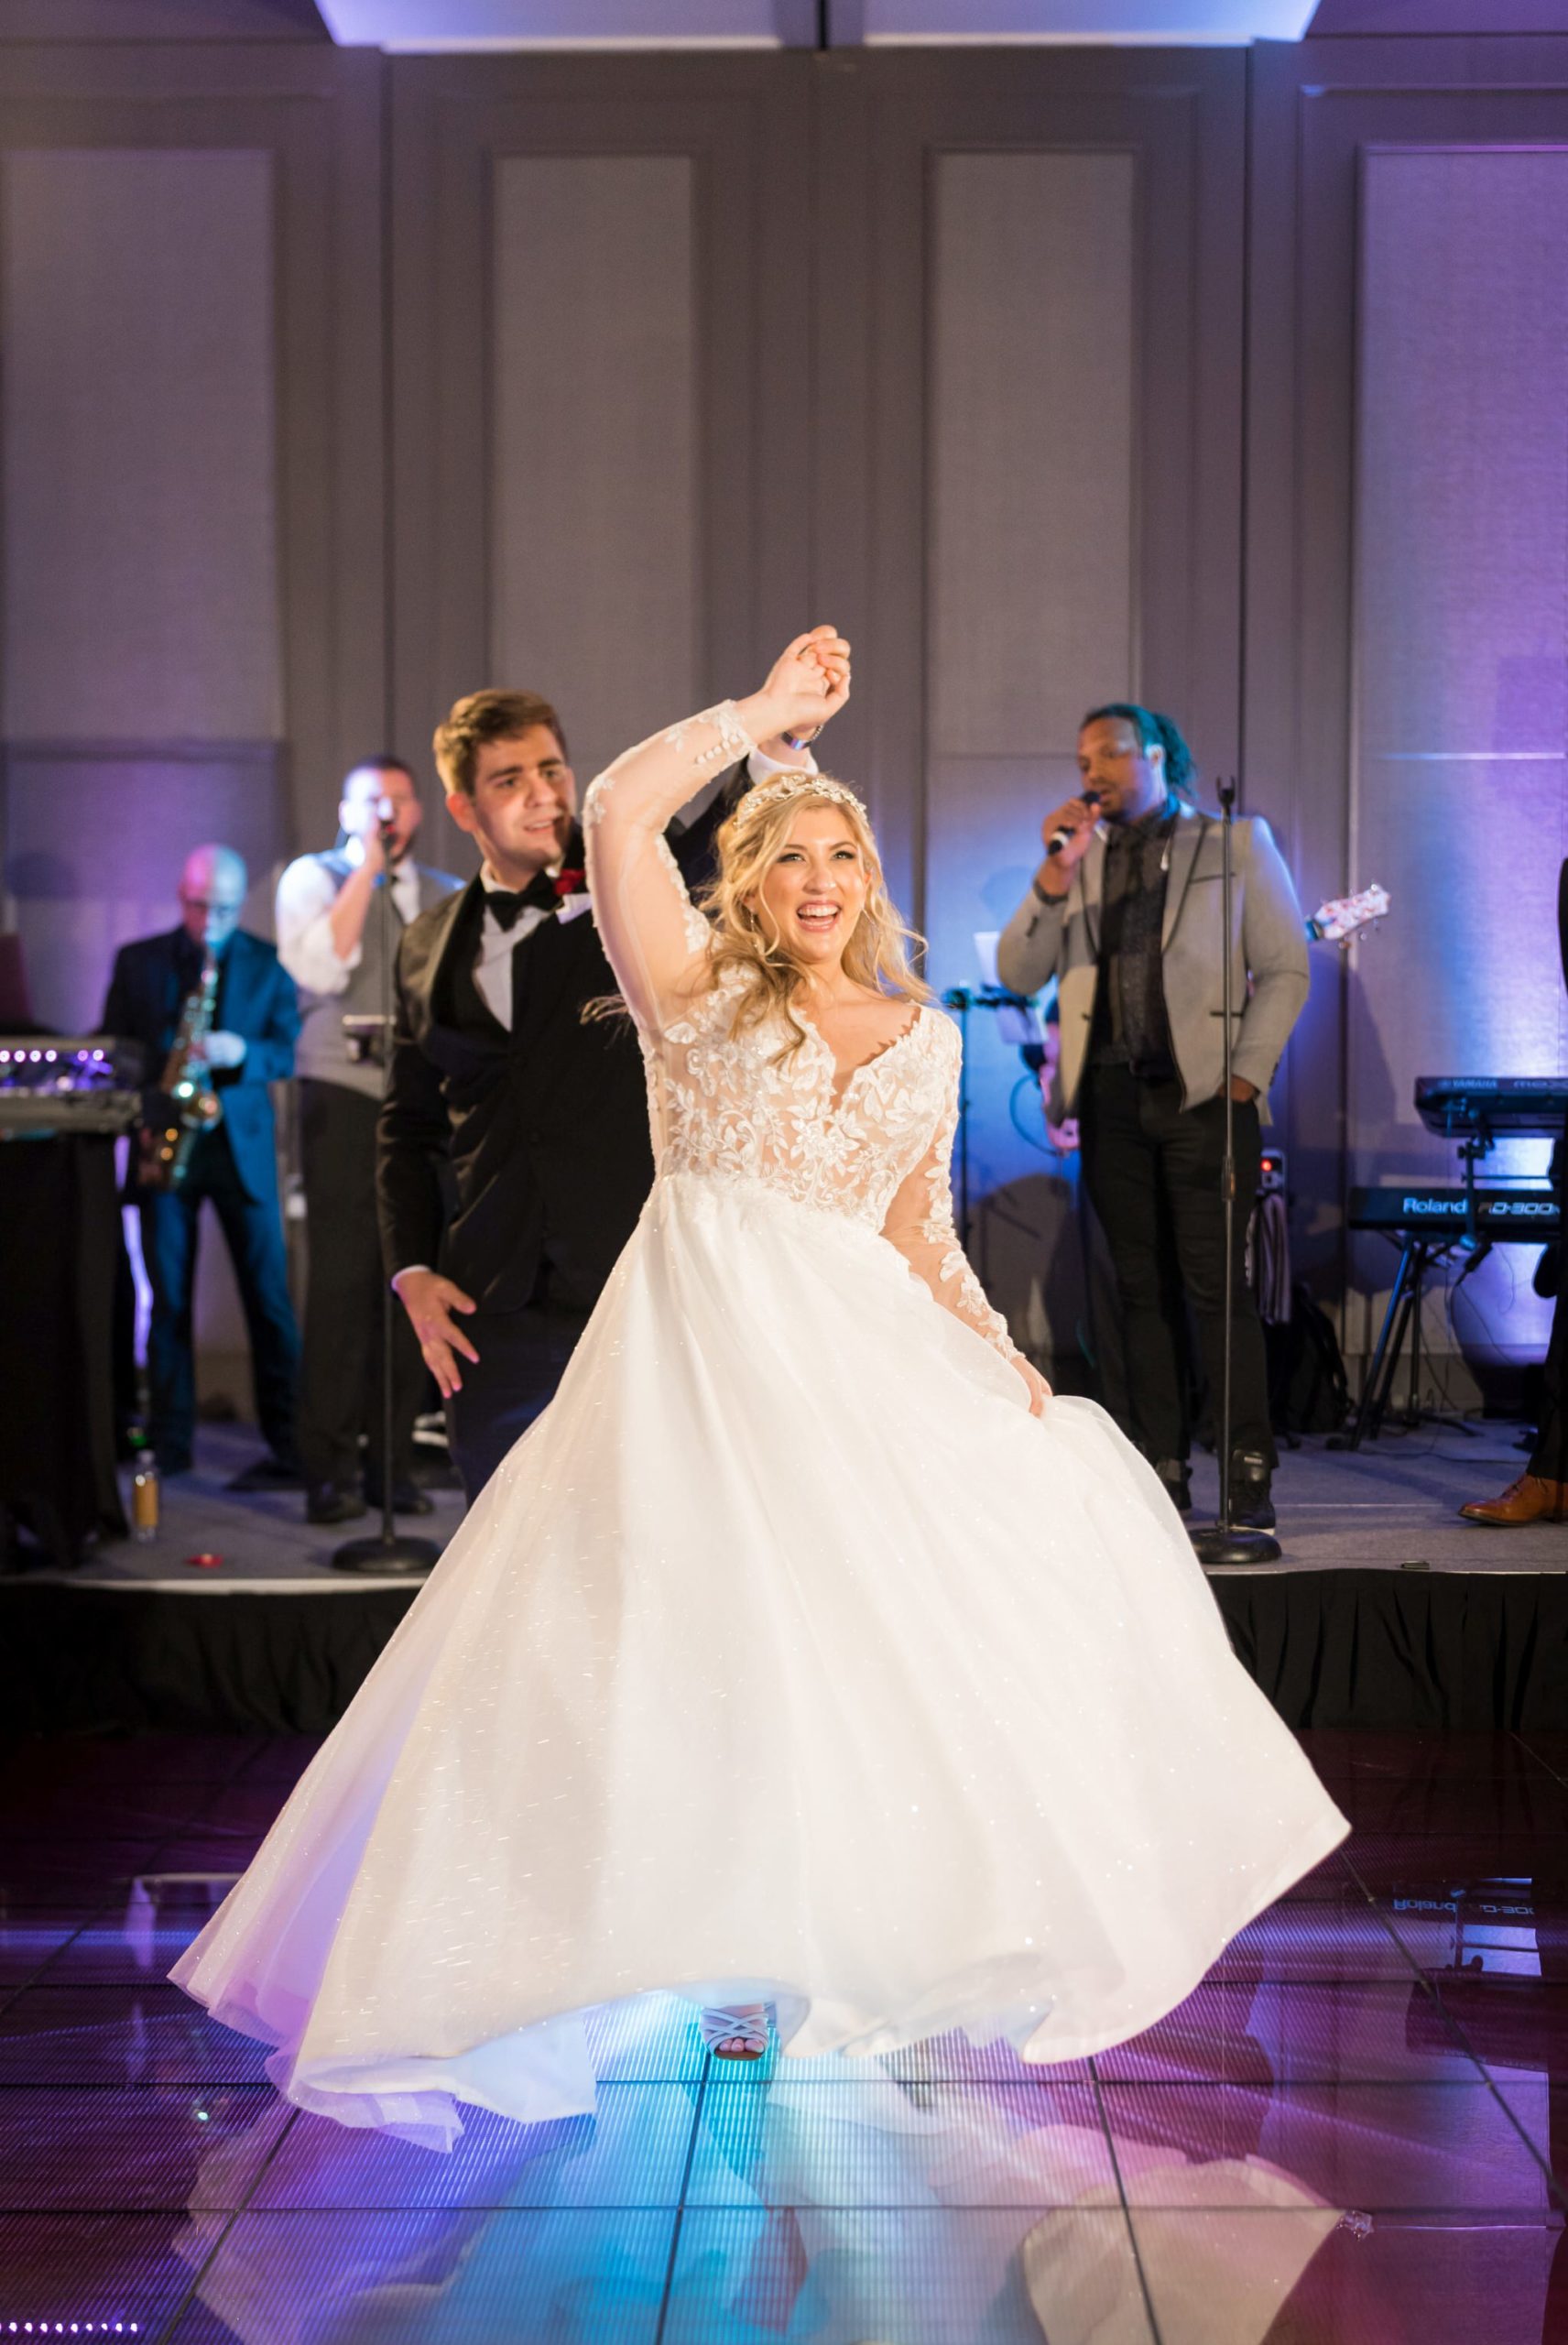 A bride twirls on the dance floor at her Daxton Hotel wedding.  